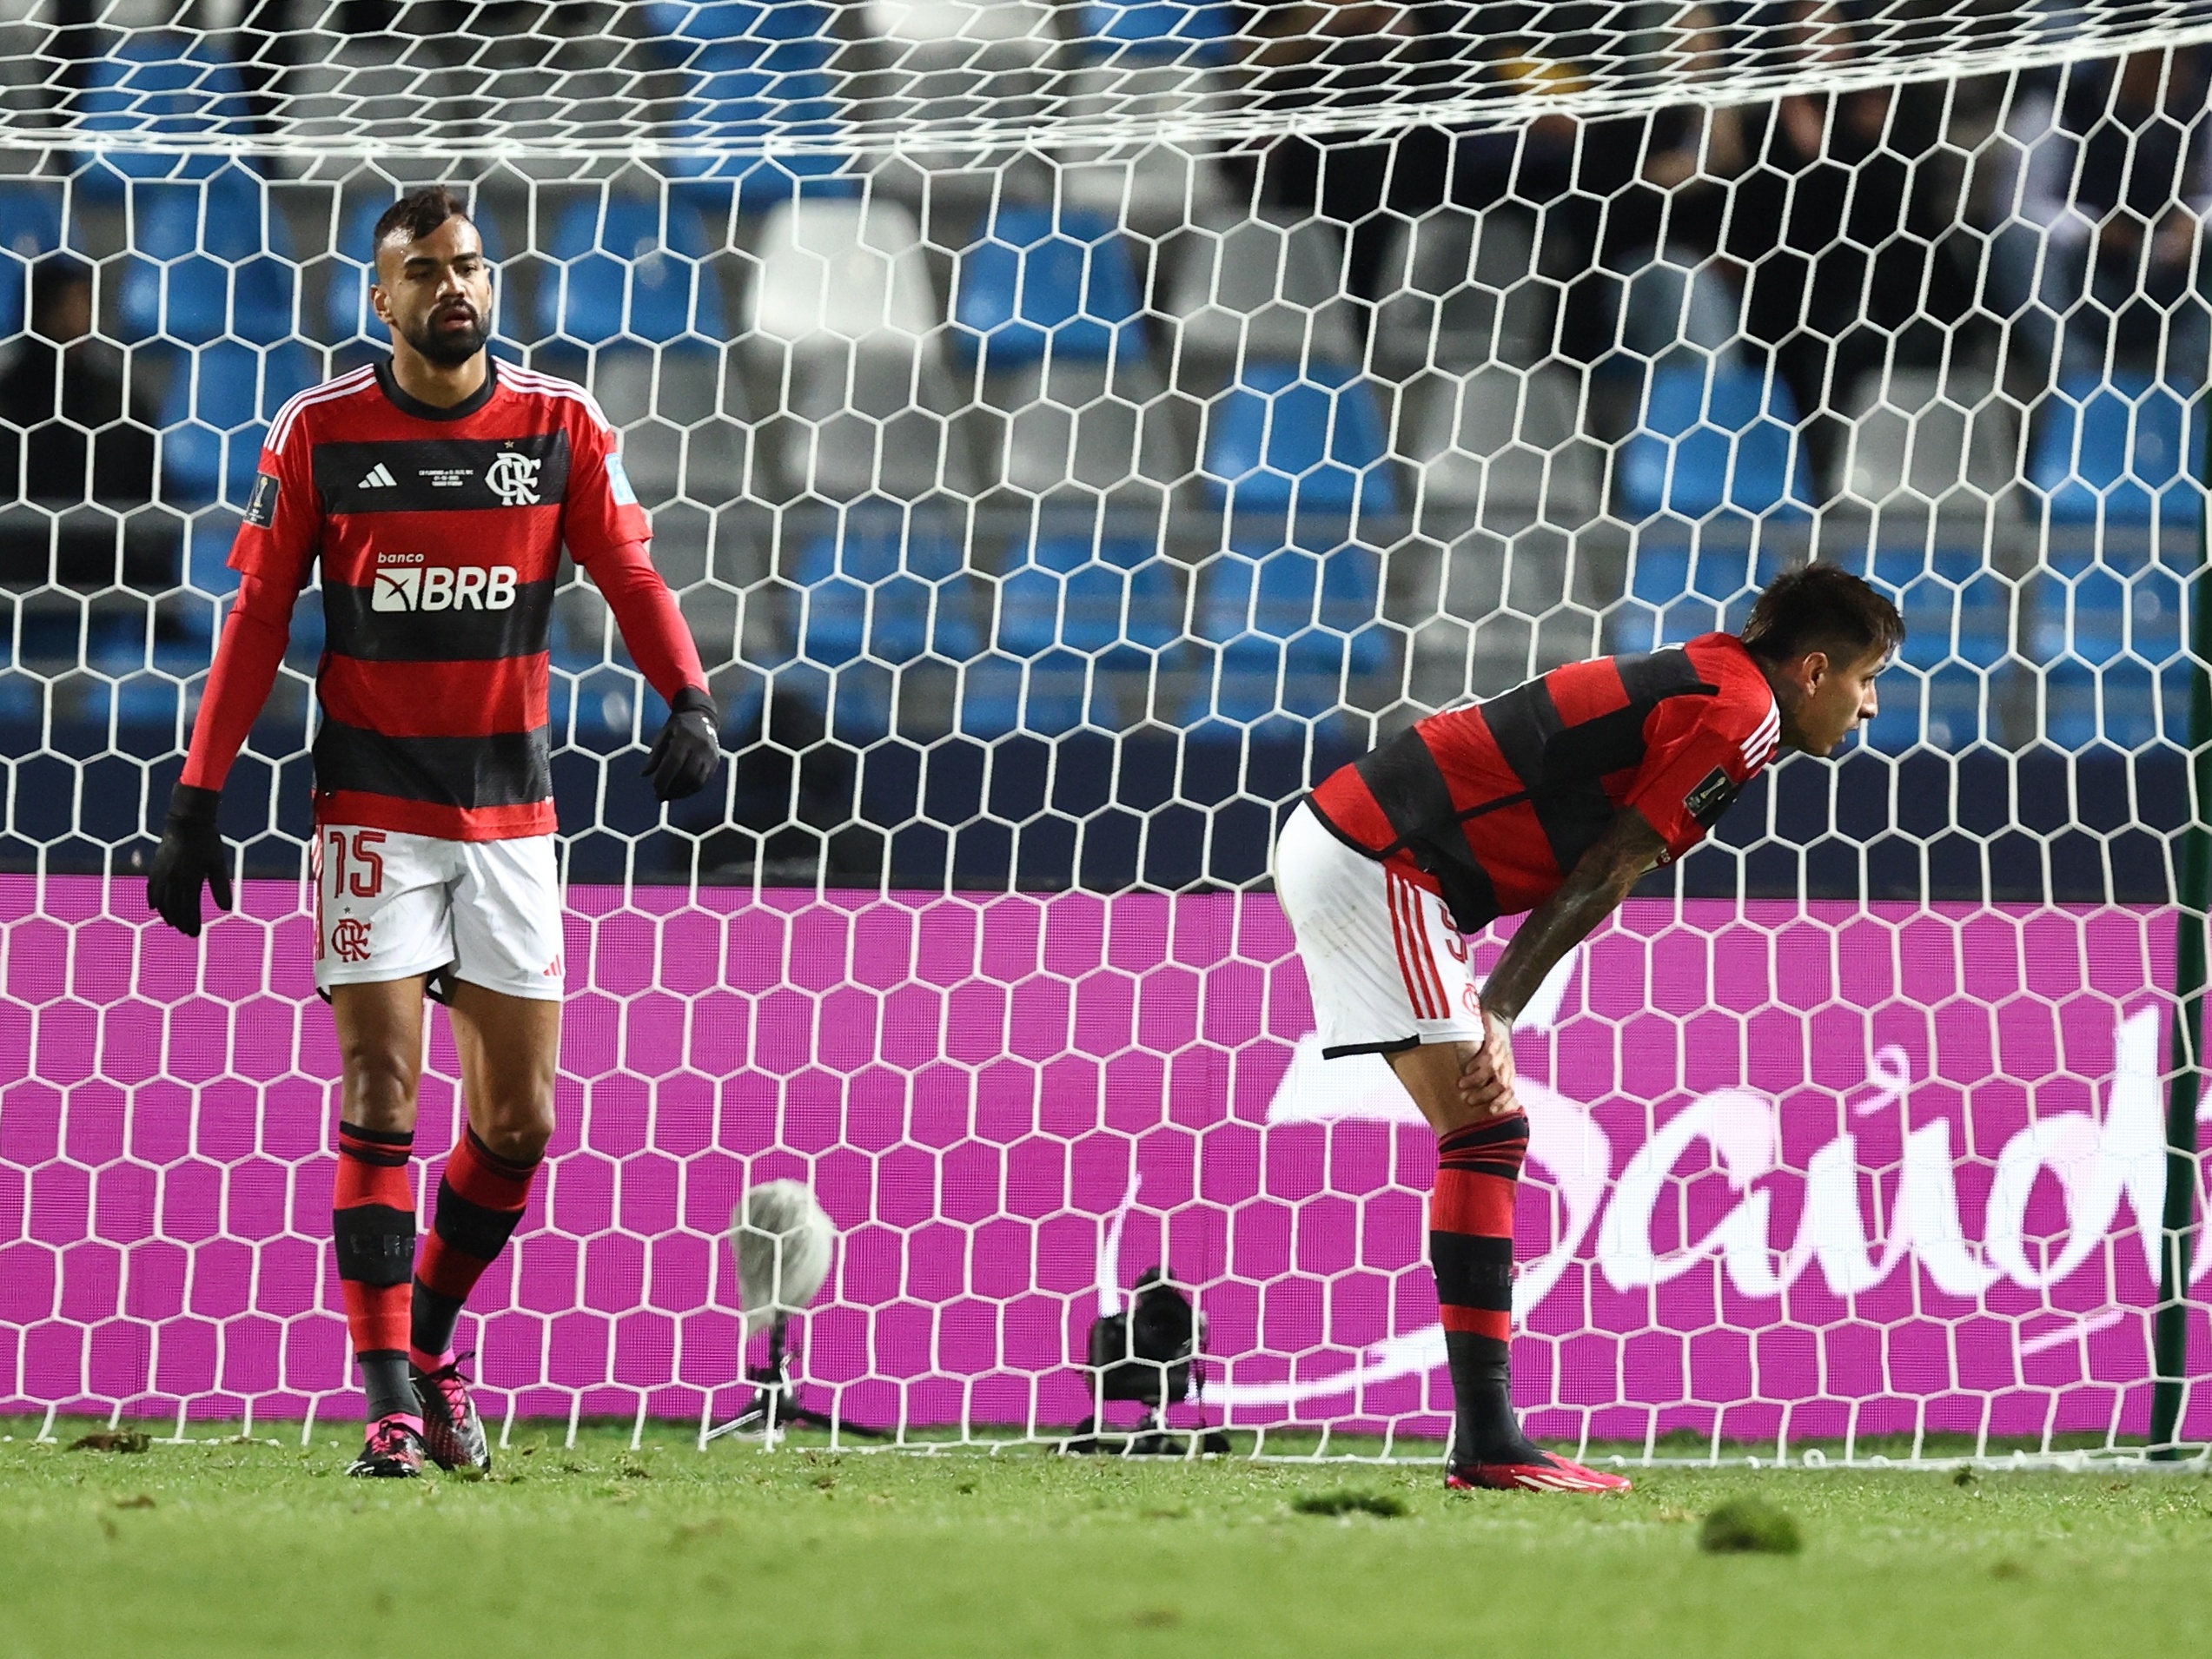 Internet Explorer do Futebol on X: Boa sorte ao Flamengo no Mundial   / X